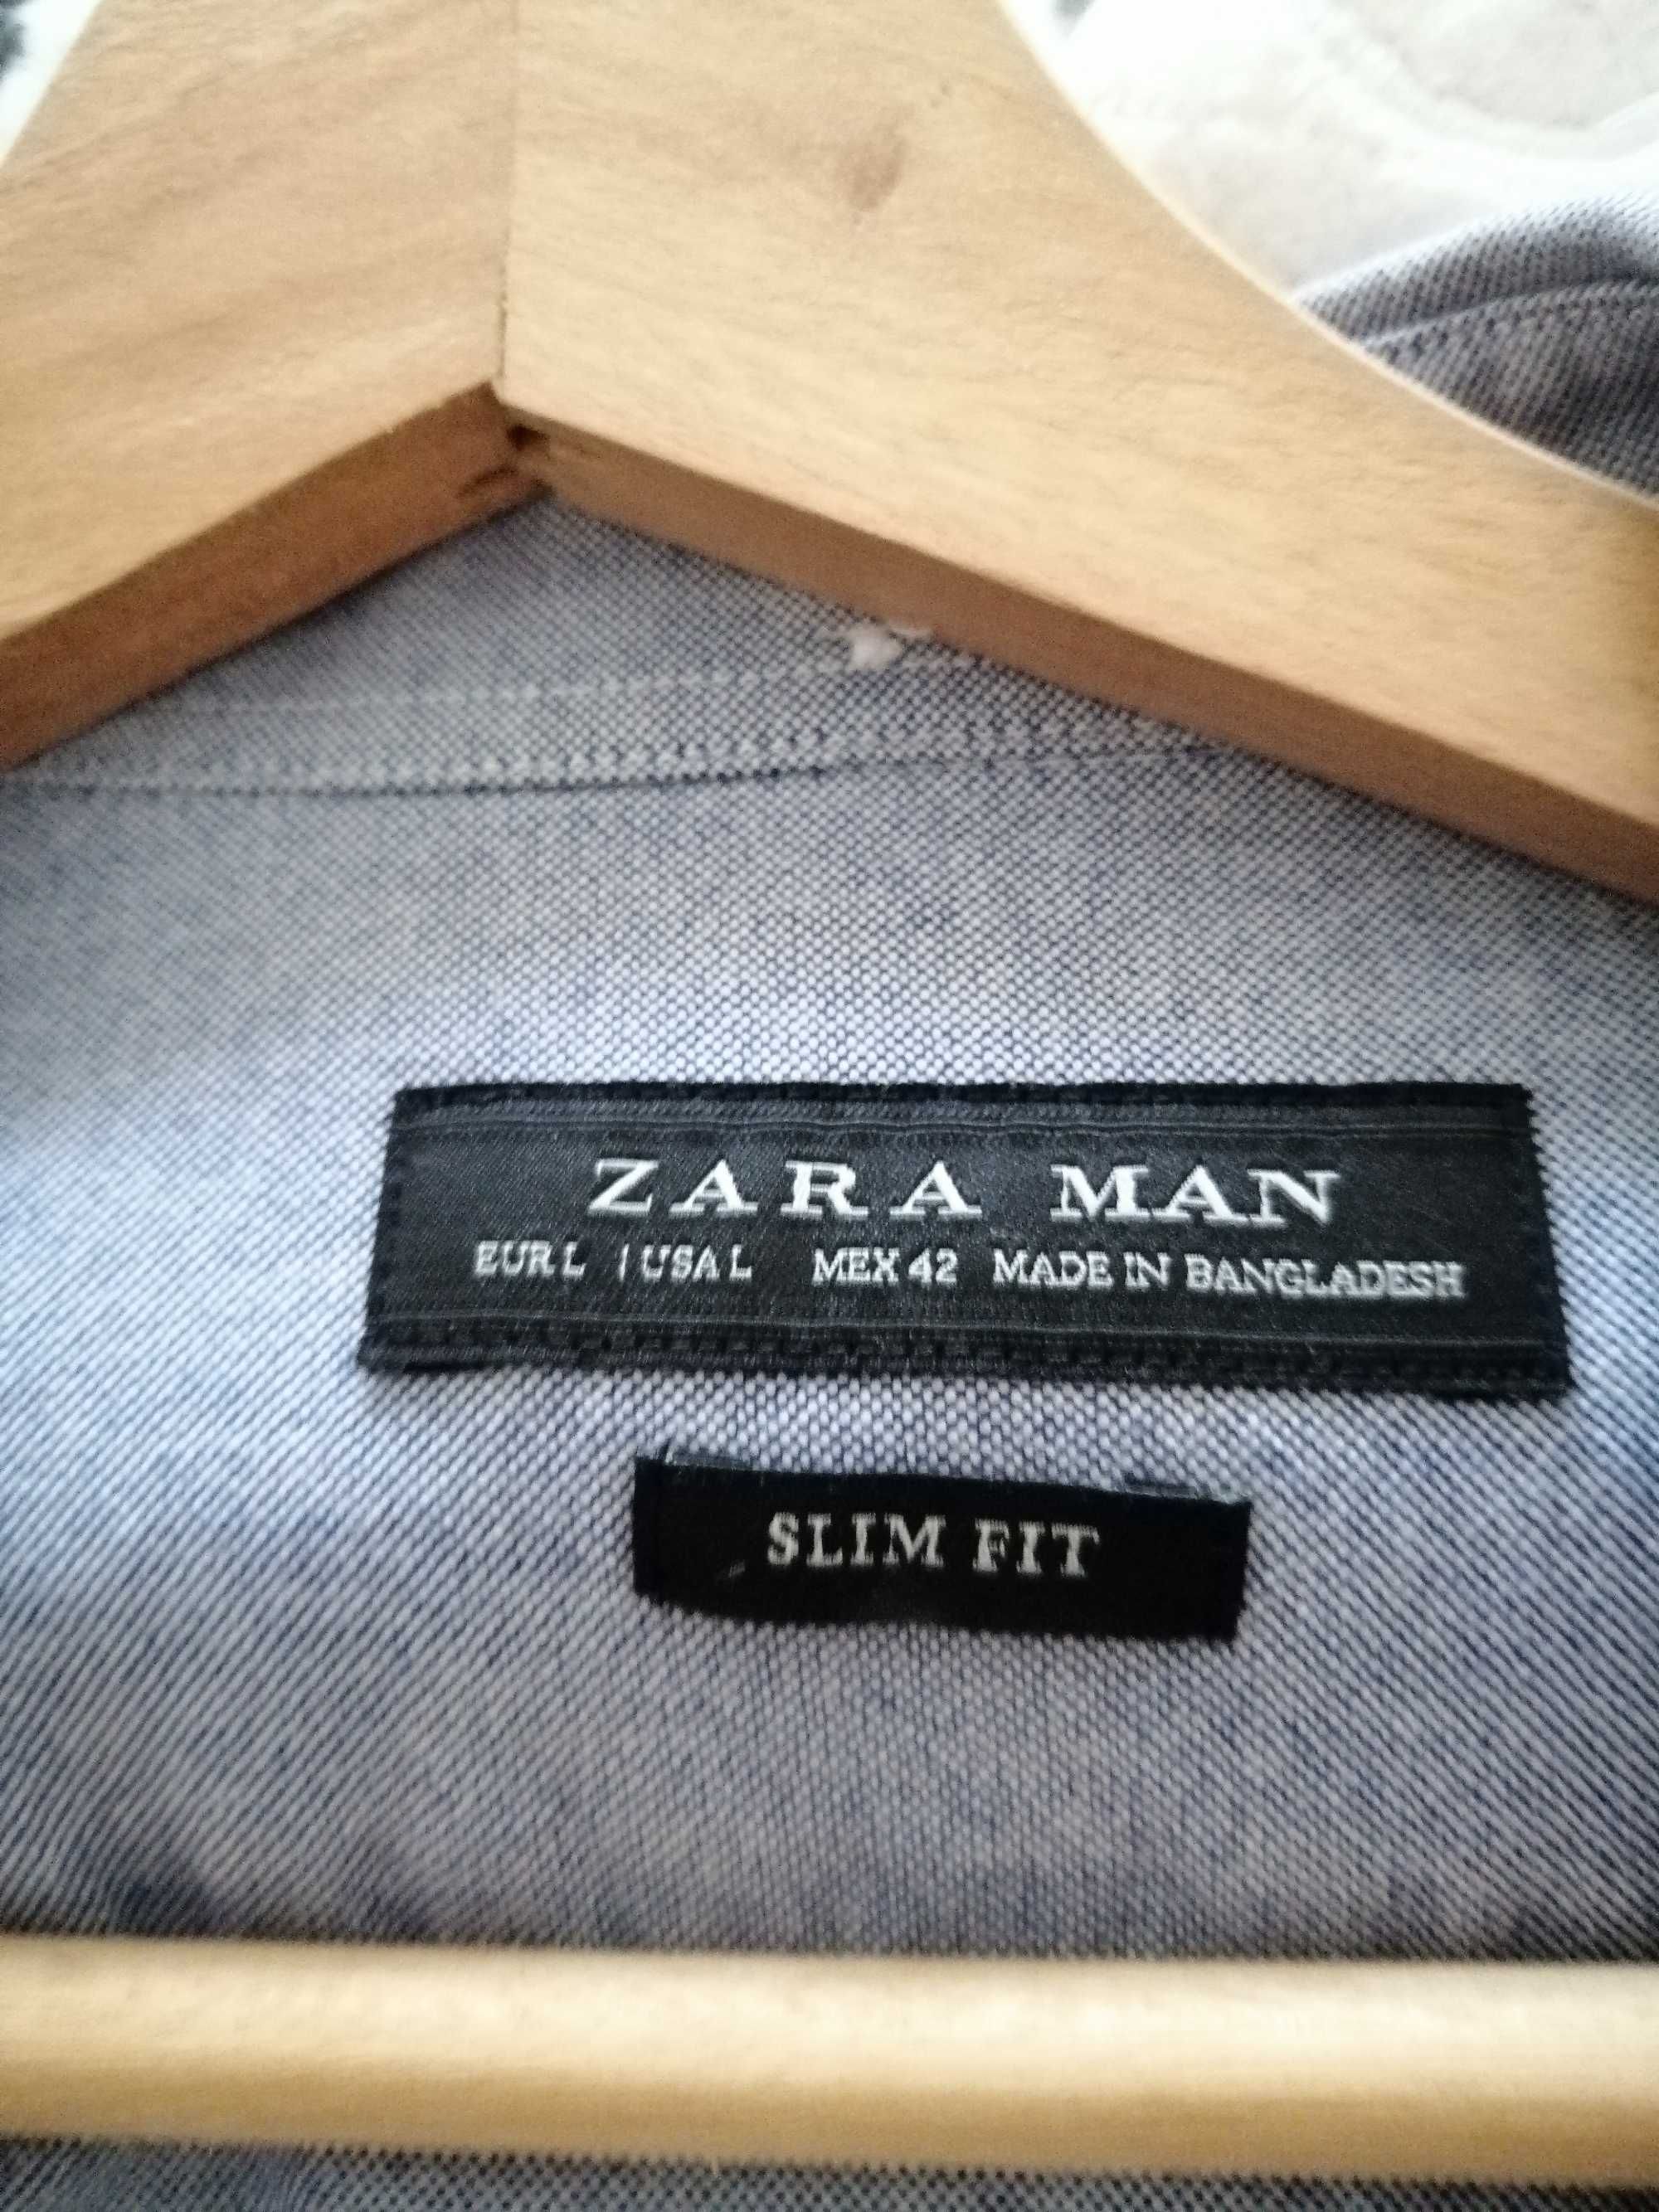 Camisa Zara Man como nova